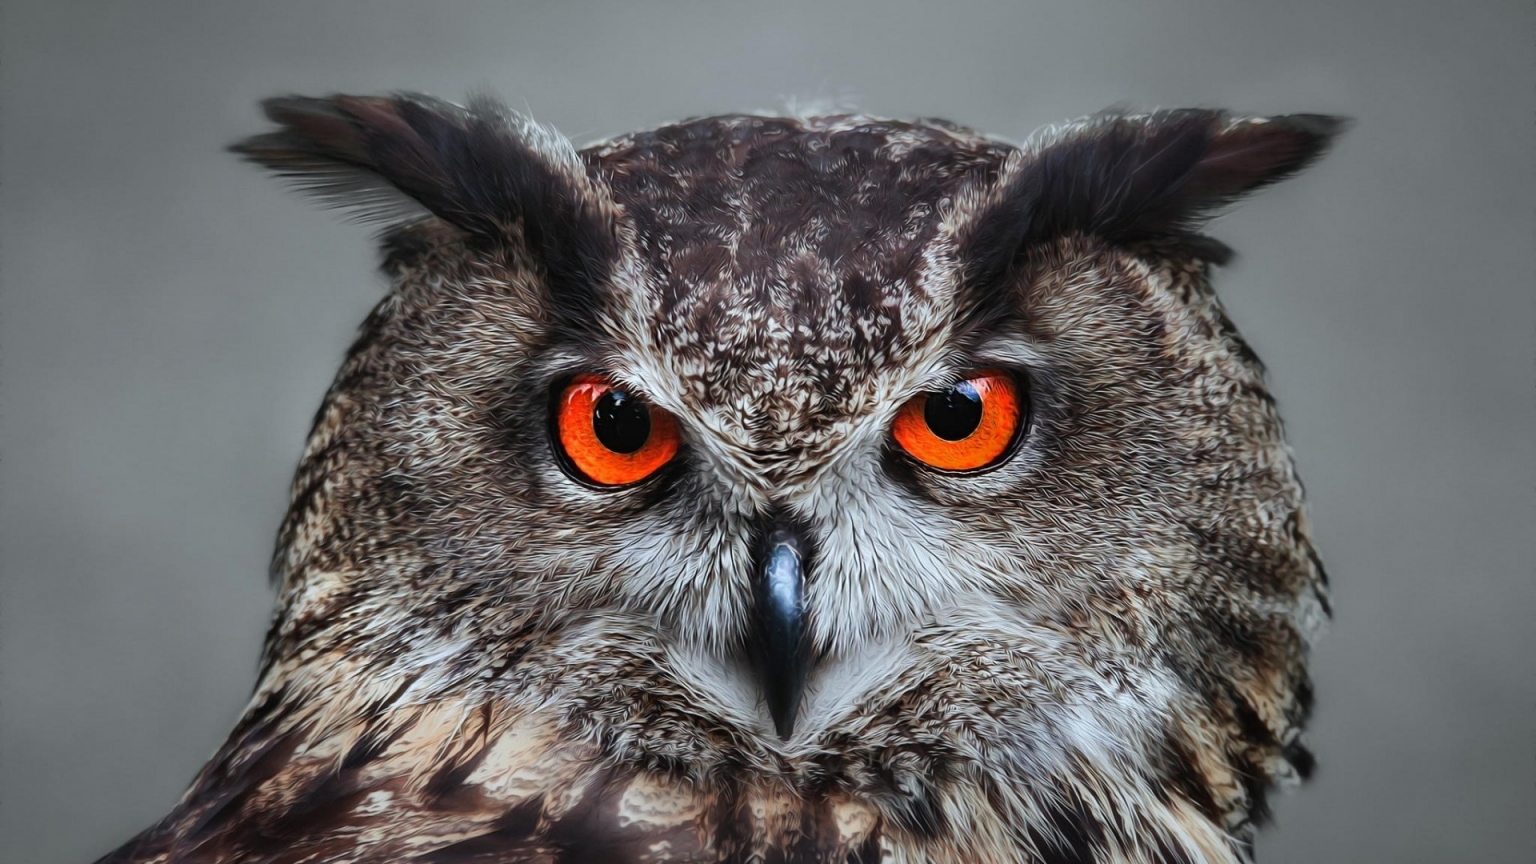 Orange Eyed Owl for 1536 x 864 HDTV resolution